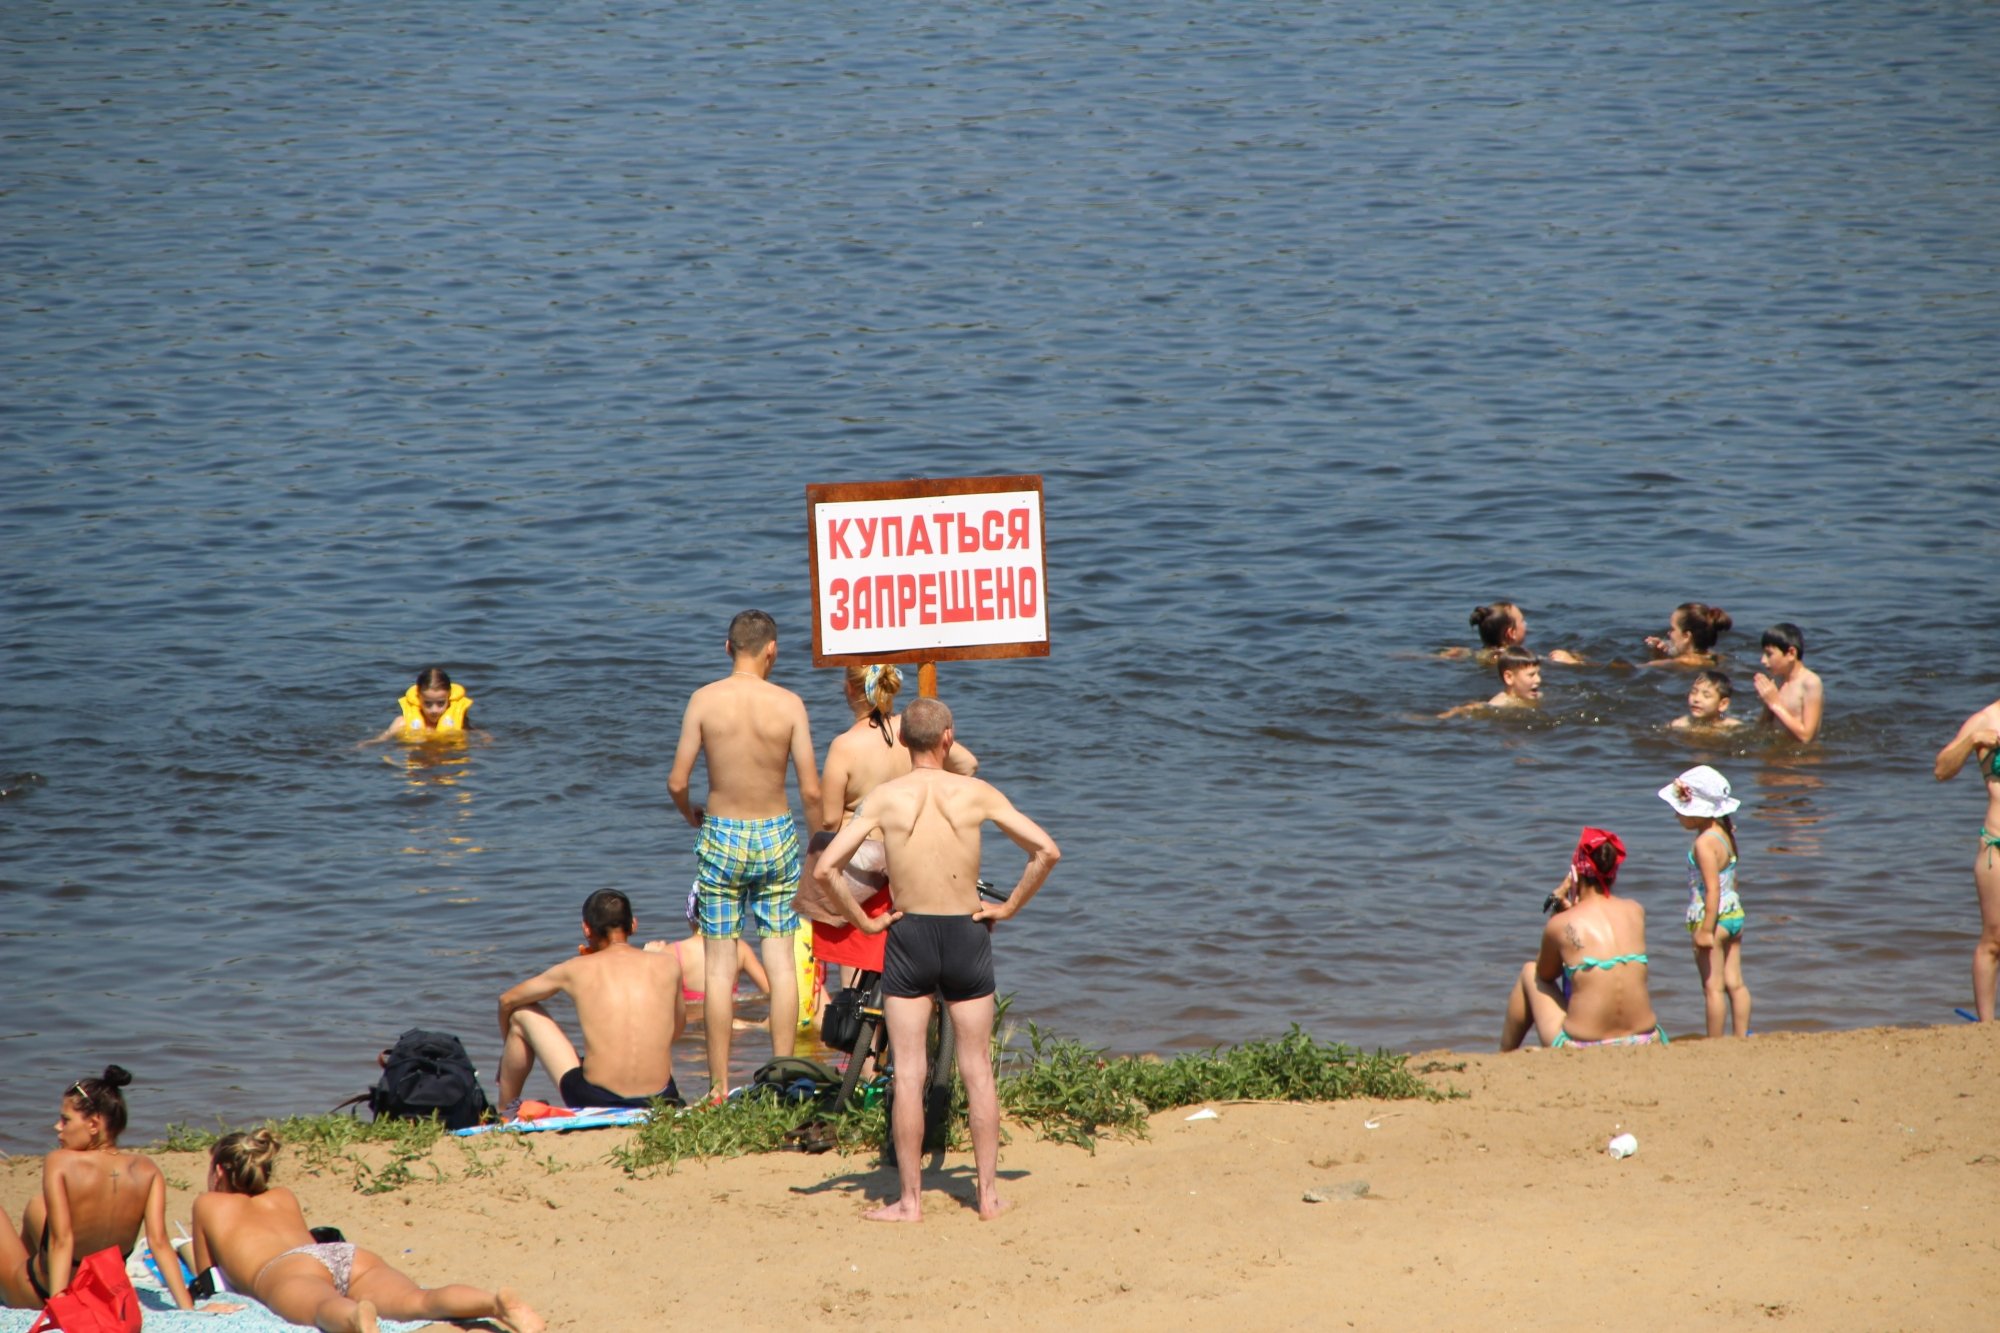 Челны нелегально открыли пляжный сезон: «Людей удержать сложно» (фото)